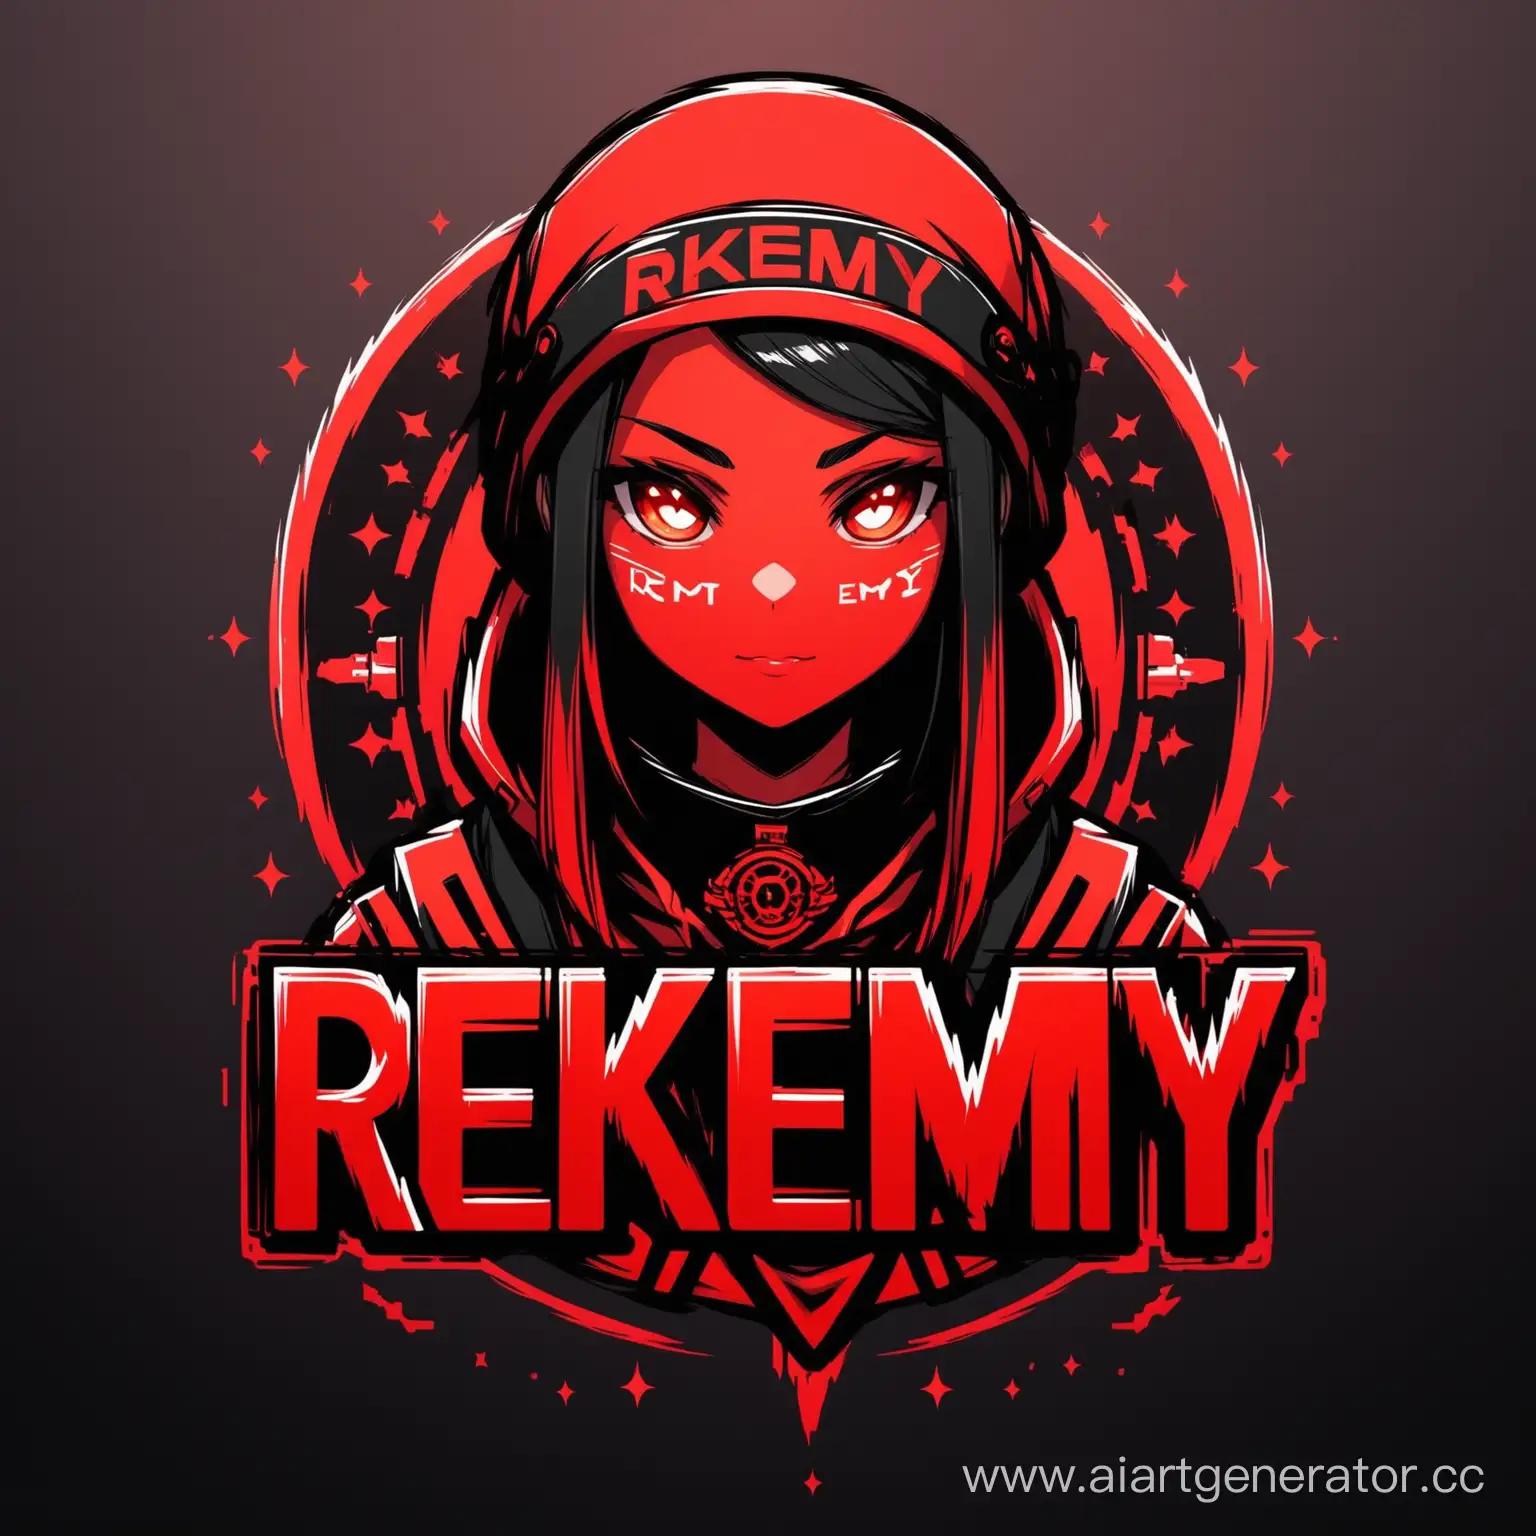 создай аватарку с надписью по середине ReKemY в красном и черном стиле